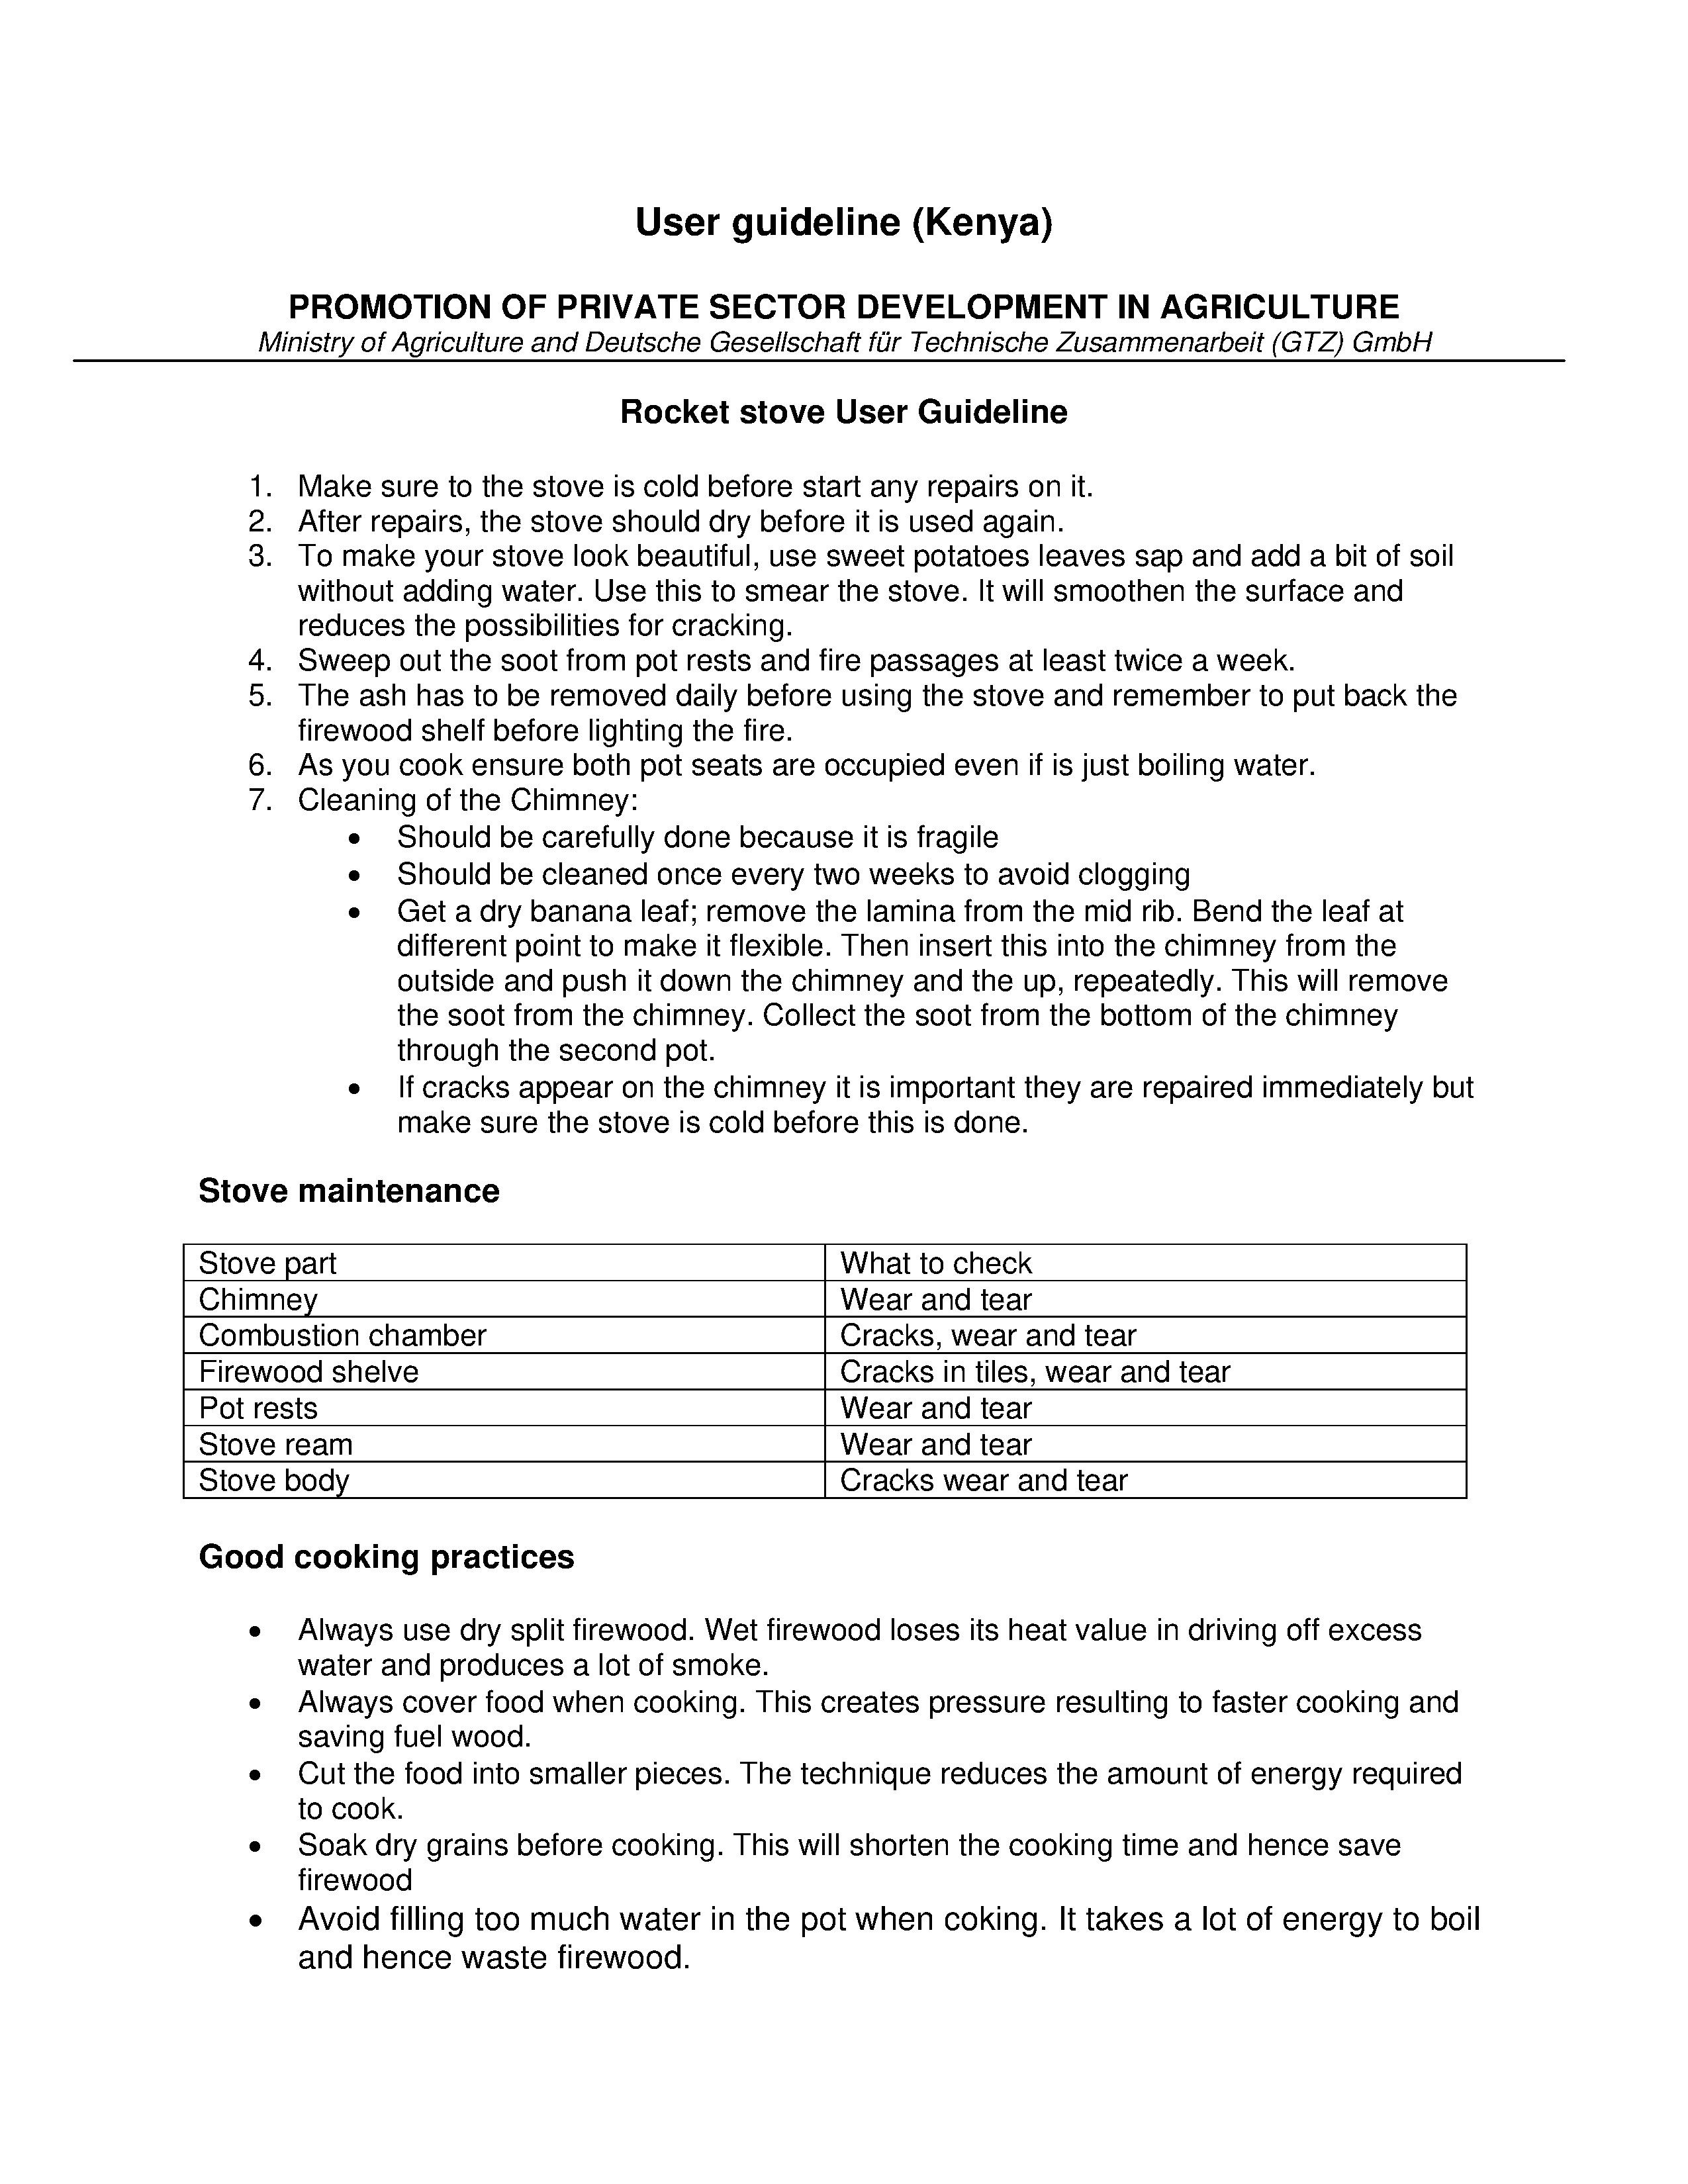 GTZ-Kenya rocket mud stove User guideline.pdf